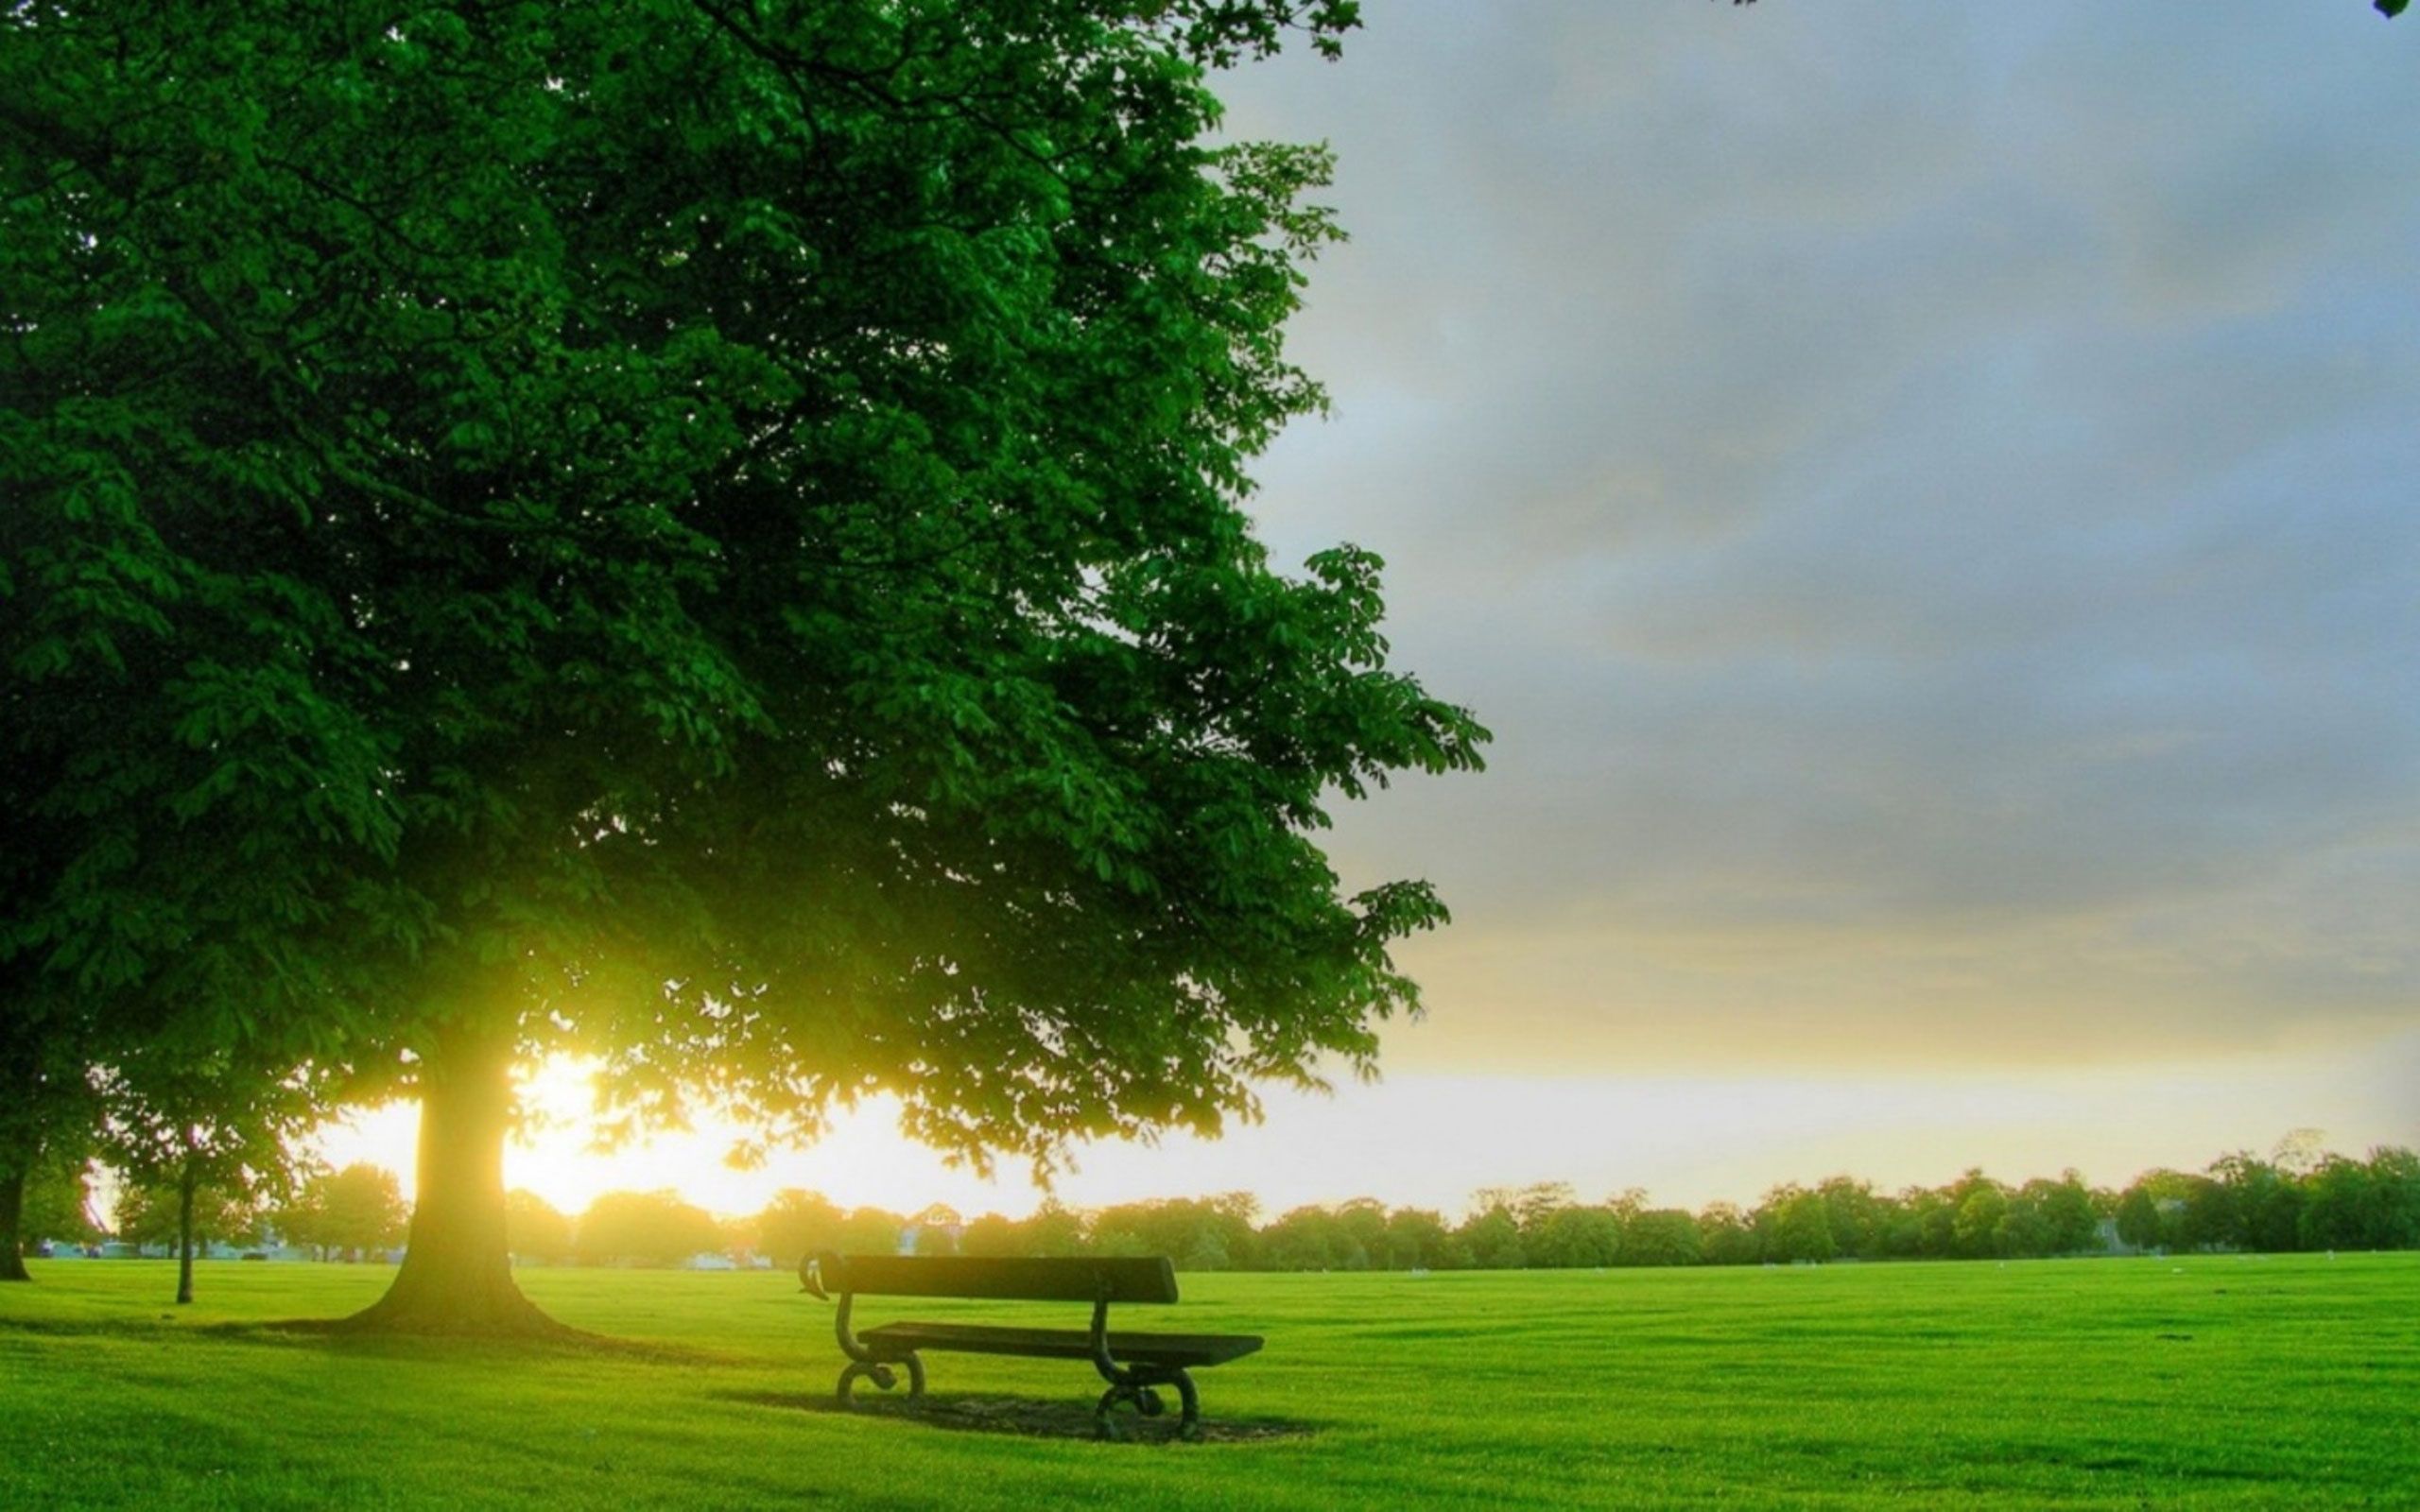 تصویر طبیعت سبز آرامش بخش 1402 در تابش آفتاب